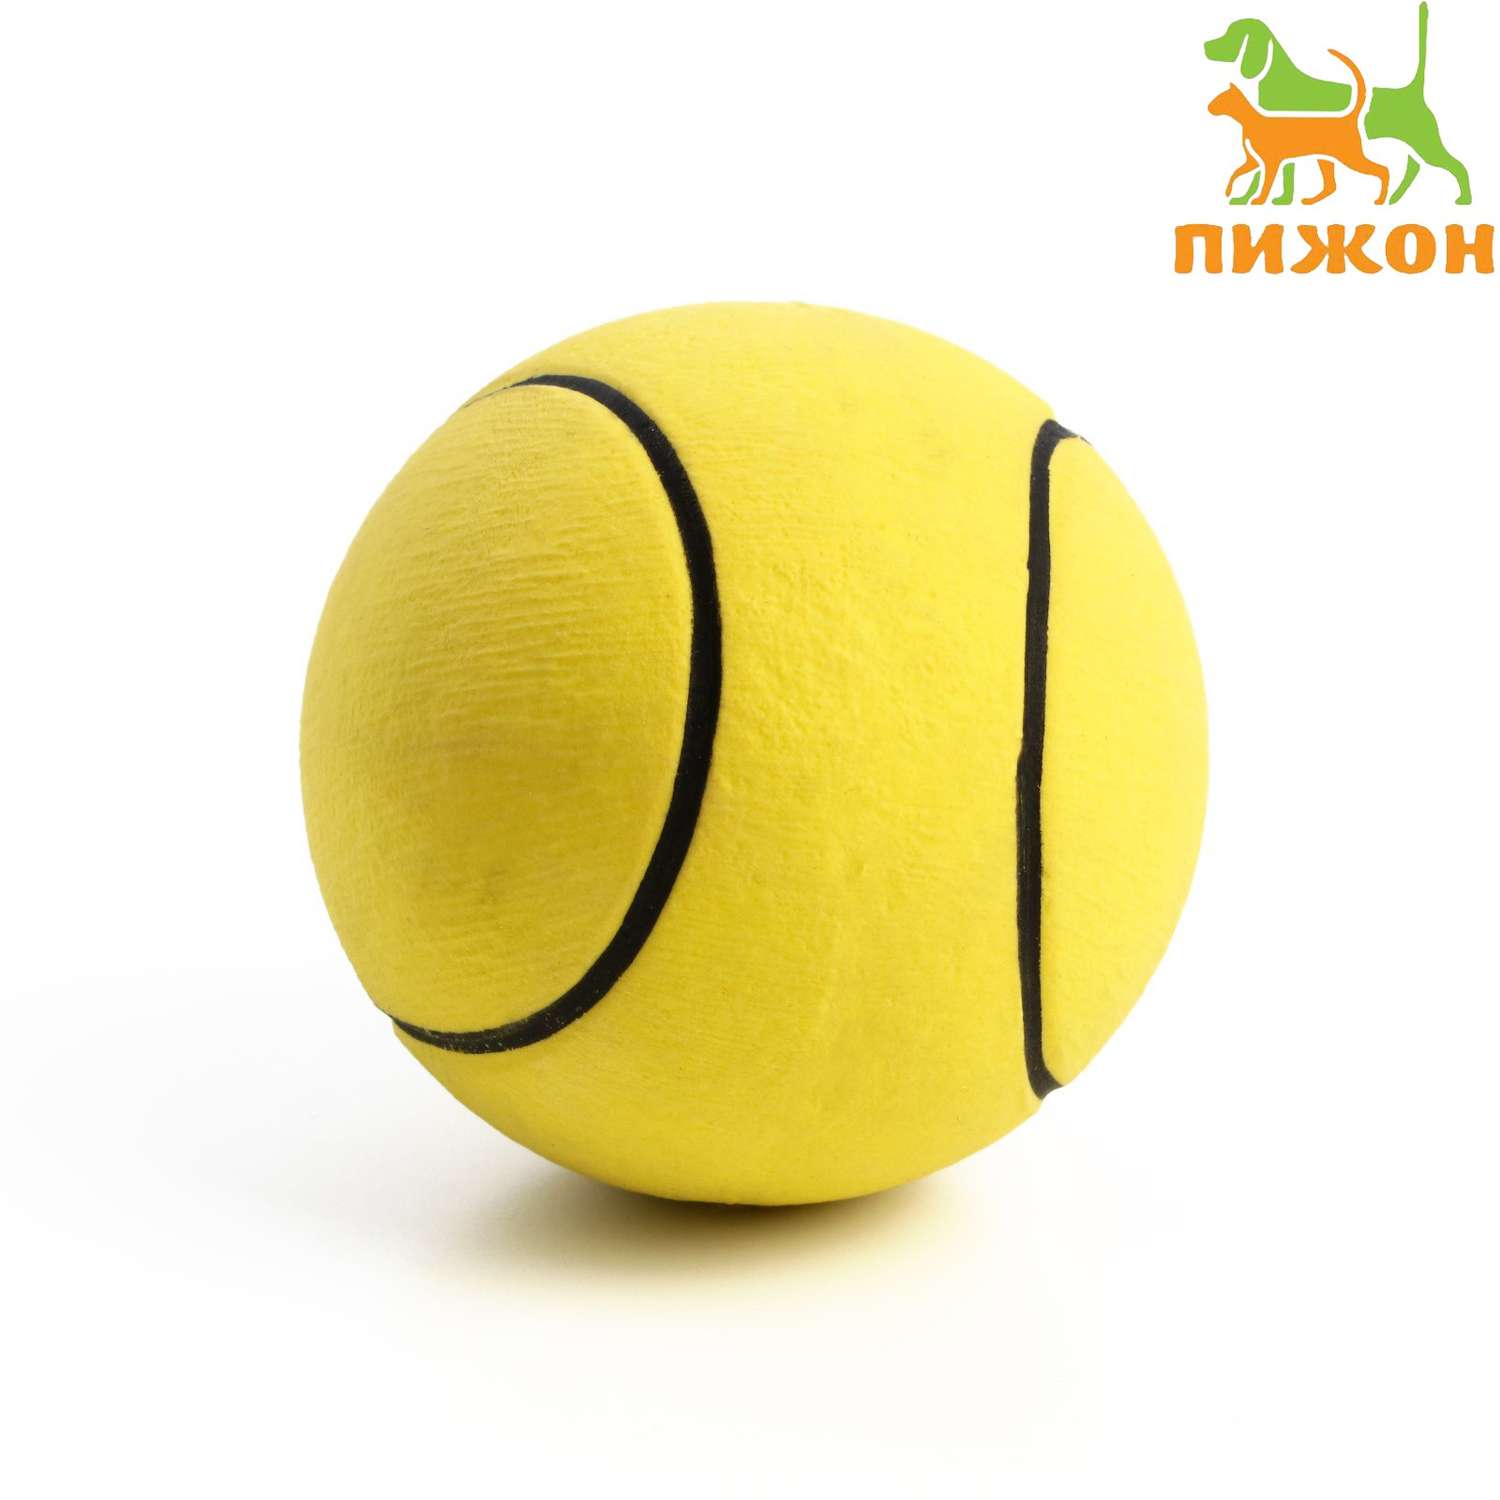 Мячик Пижон цельнолитой «Теннис» прыгучий TPR 6.3 см жёлтый - фото 1